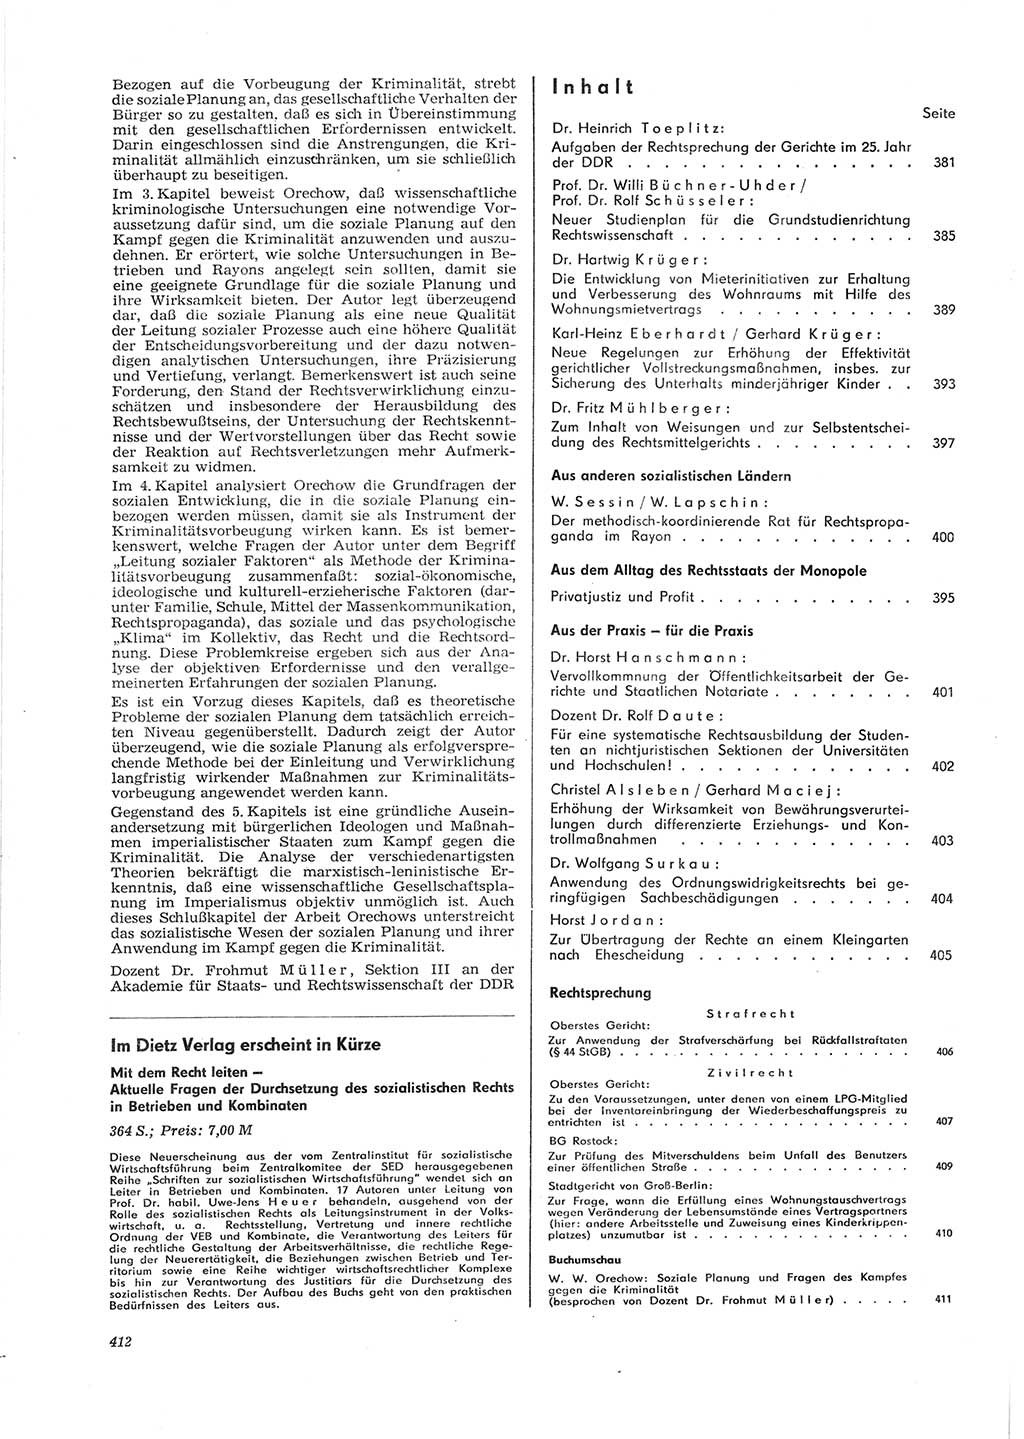 Neue Justiz (NJ), Zeitschrift für Recht und Rechtswissenschaft [Deutsche Demokratische Republik (DDR)], 28. Jahrgang 1974, Seite 412 (NJ DDR 1974, S. 412)